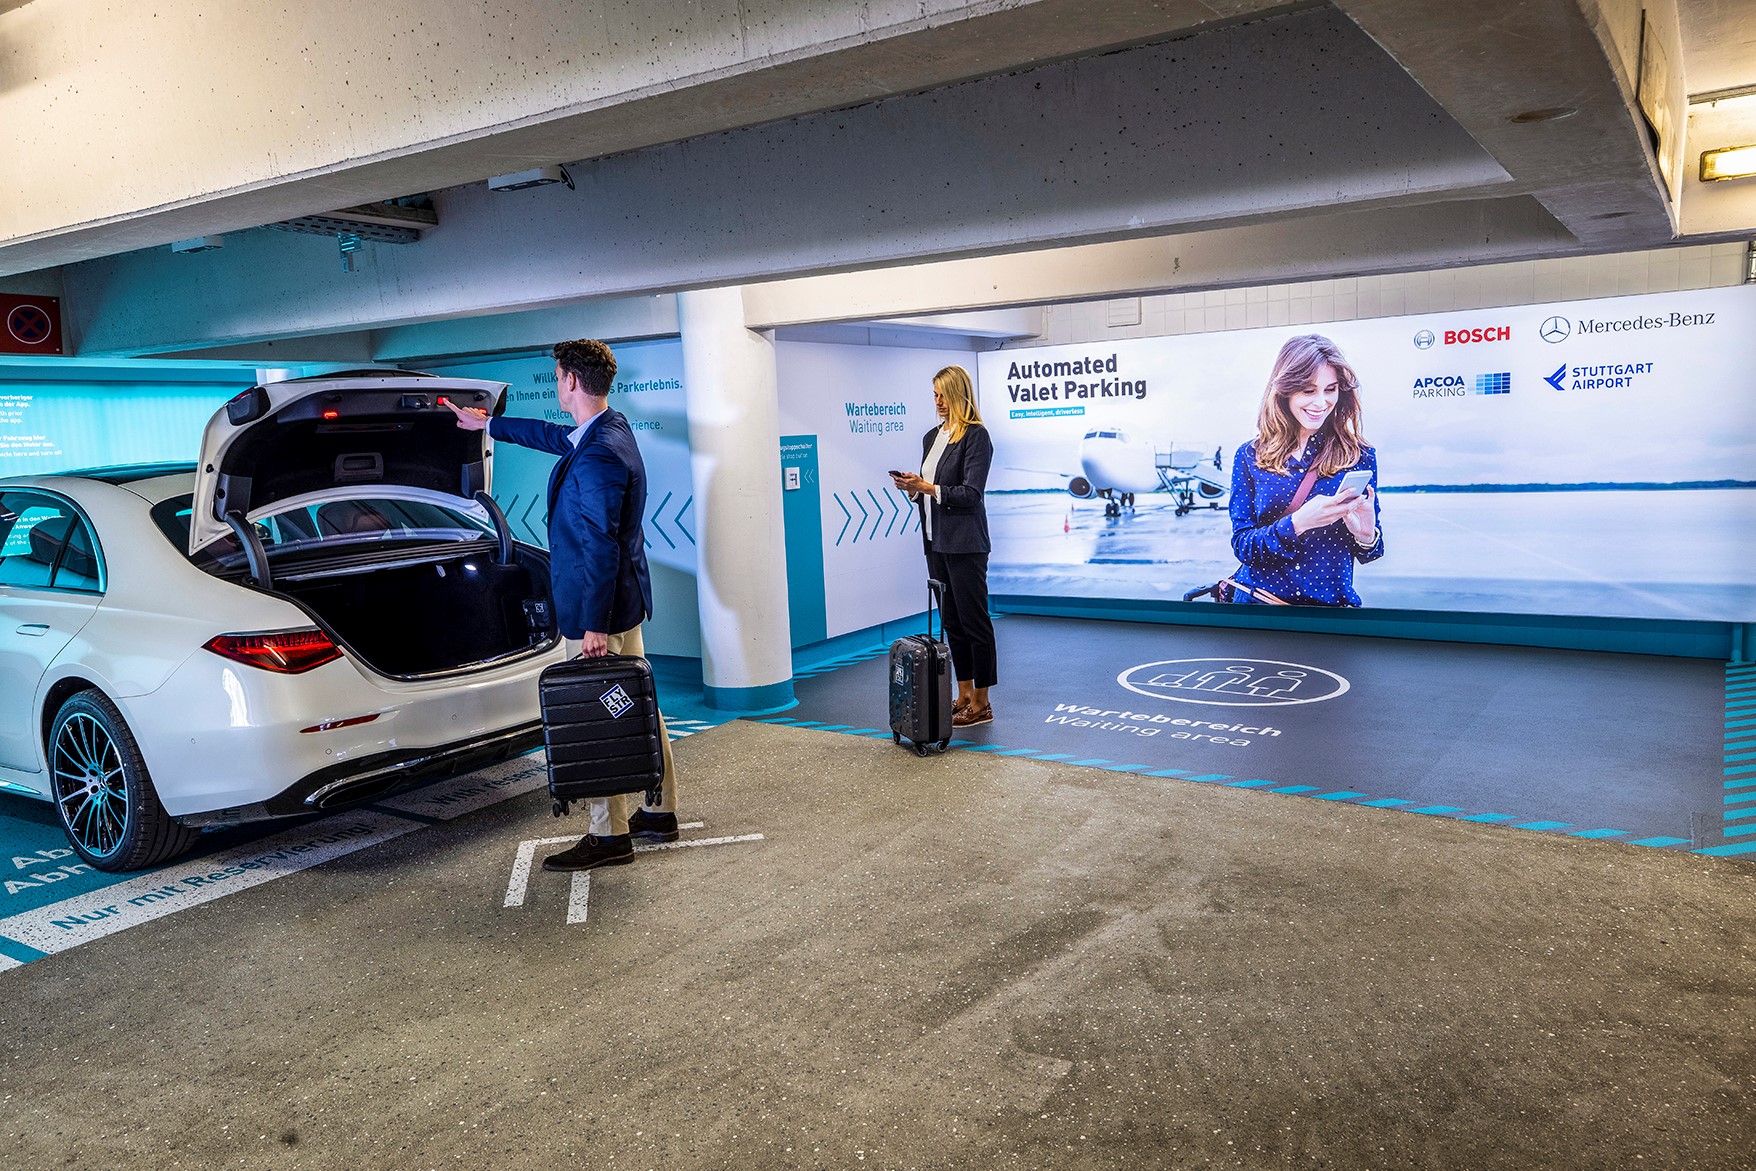 Światowa premiera: system parkowania bez kierowcy firm Bosch i Mercedes-Benz dopuszczony do użytku komercyjnego